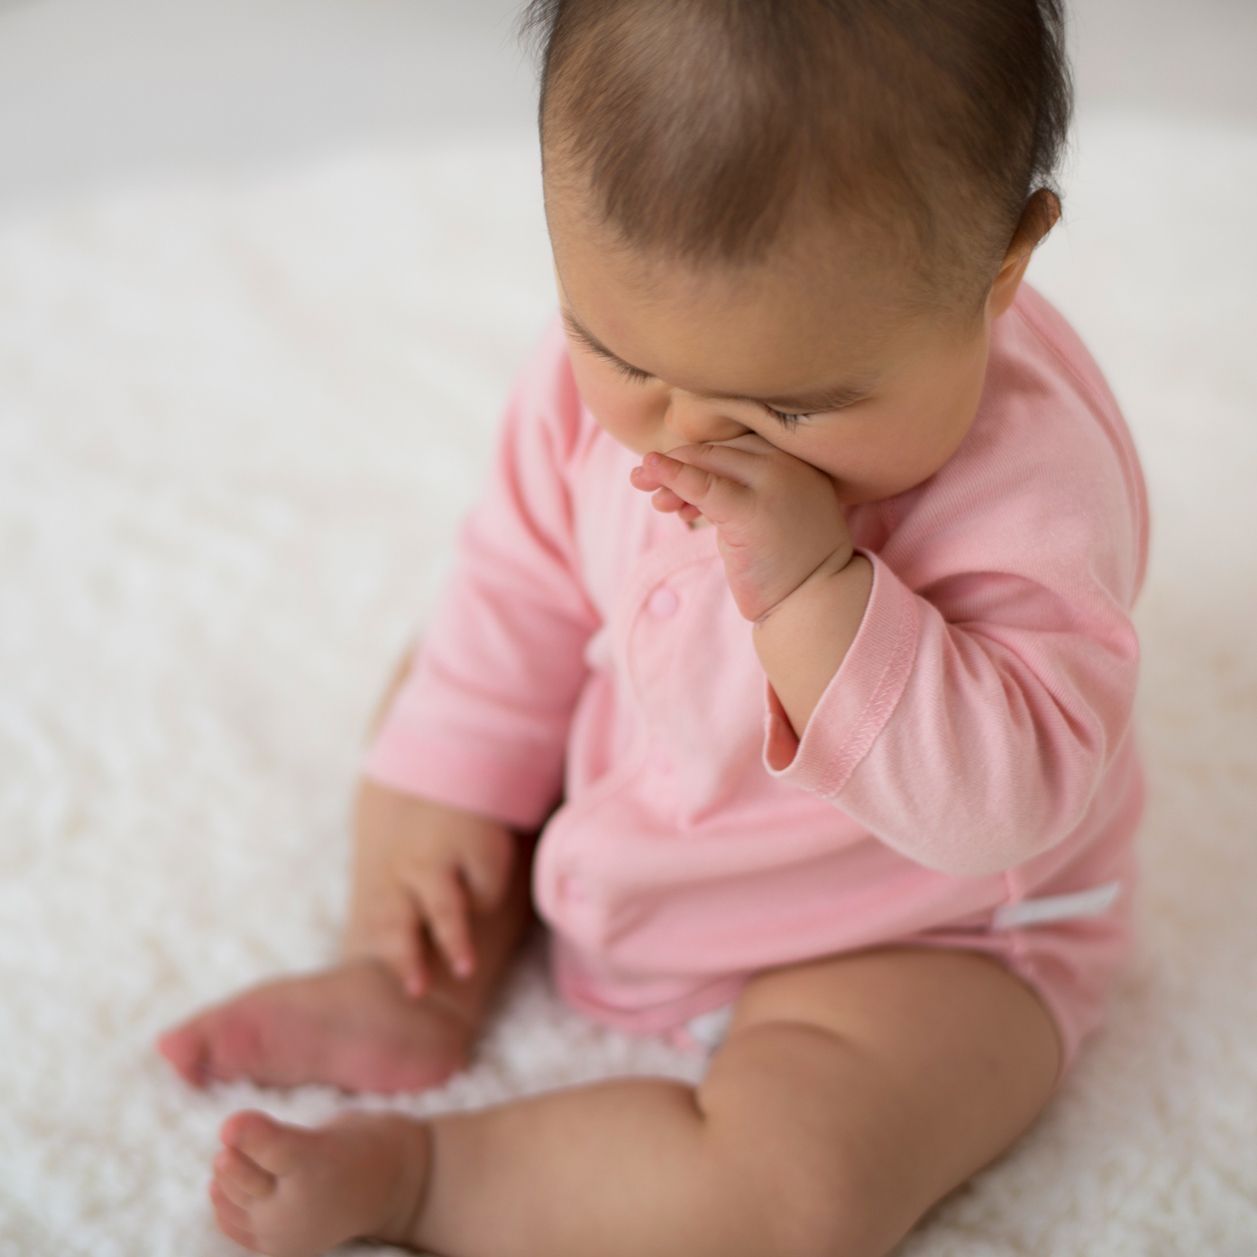 Nariz tapada en bebé recién nacido: Obstrucción nasal